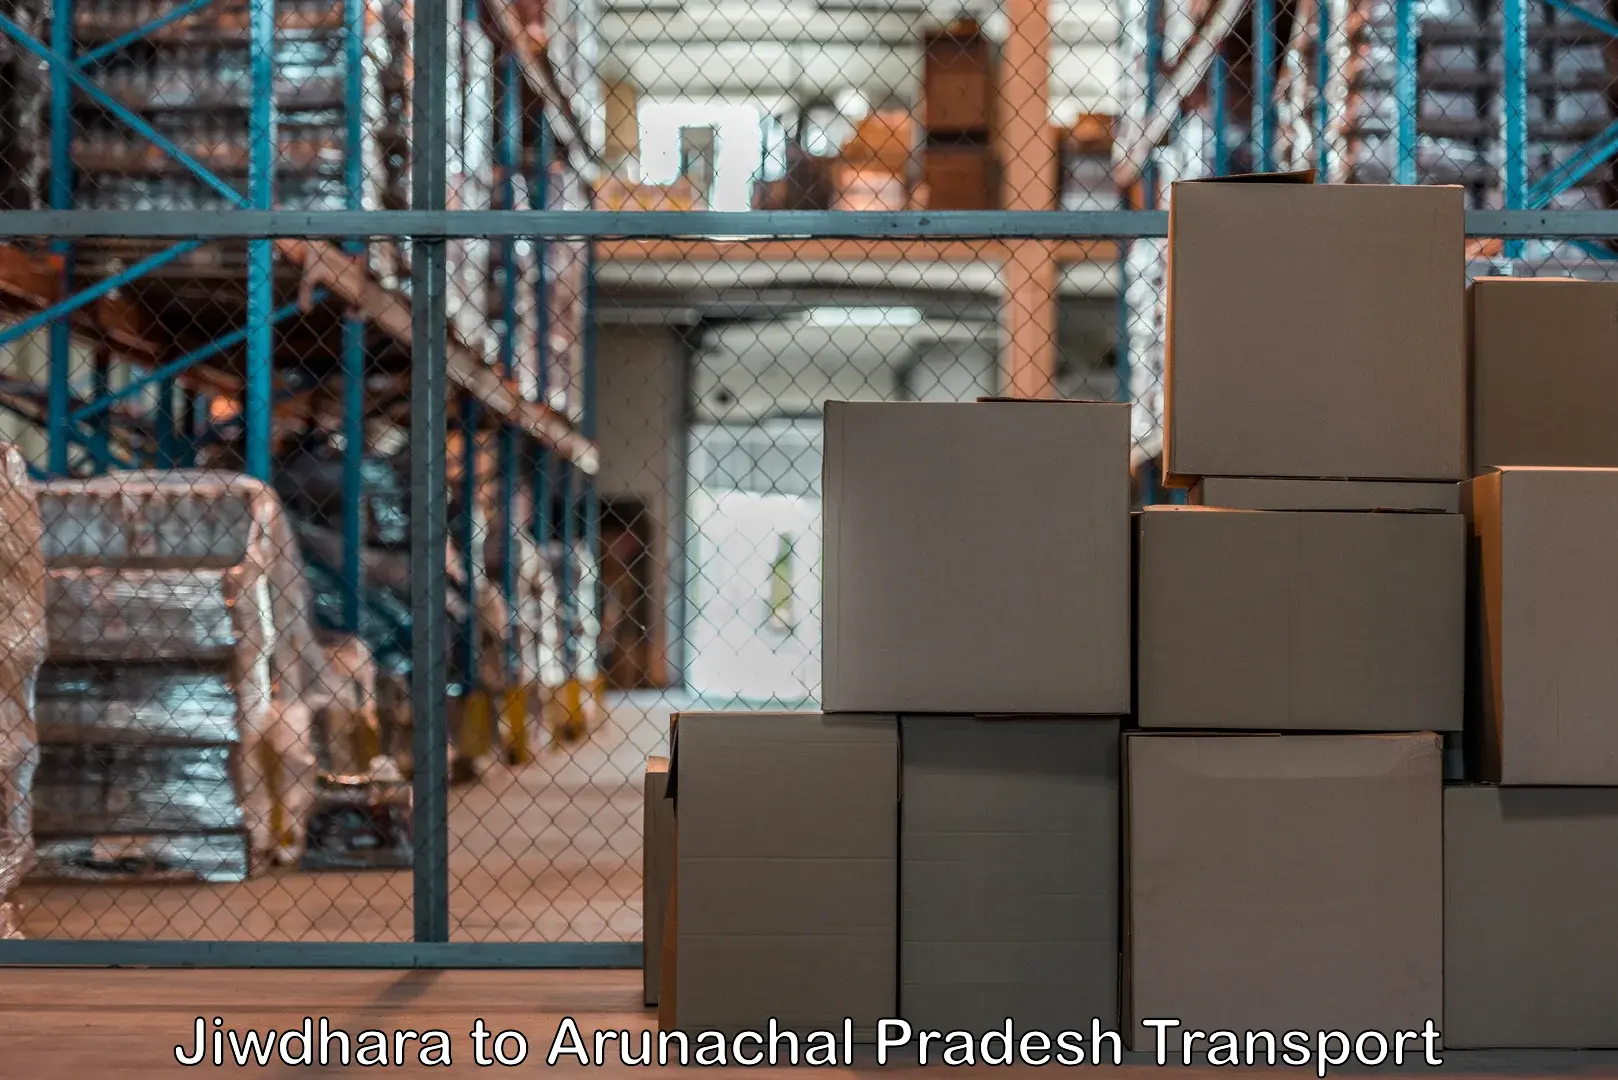 Furniture transport service Jiwdhara to Lohit